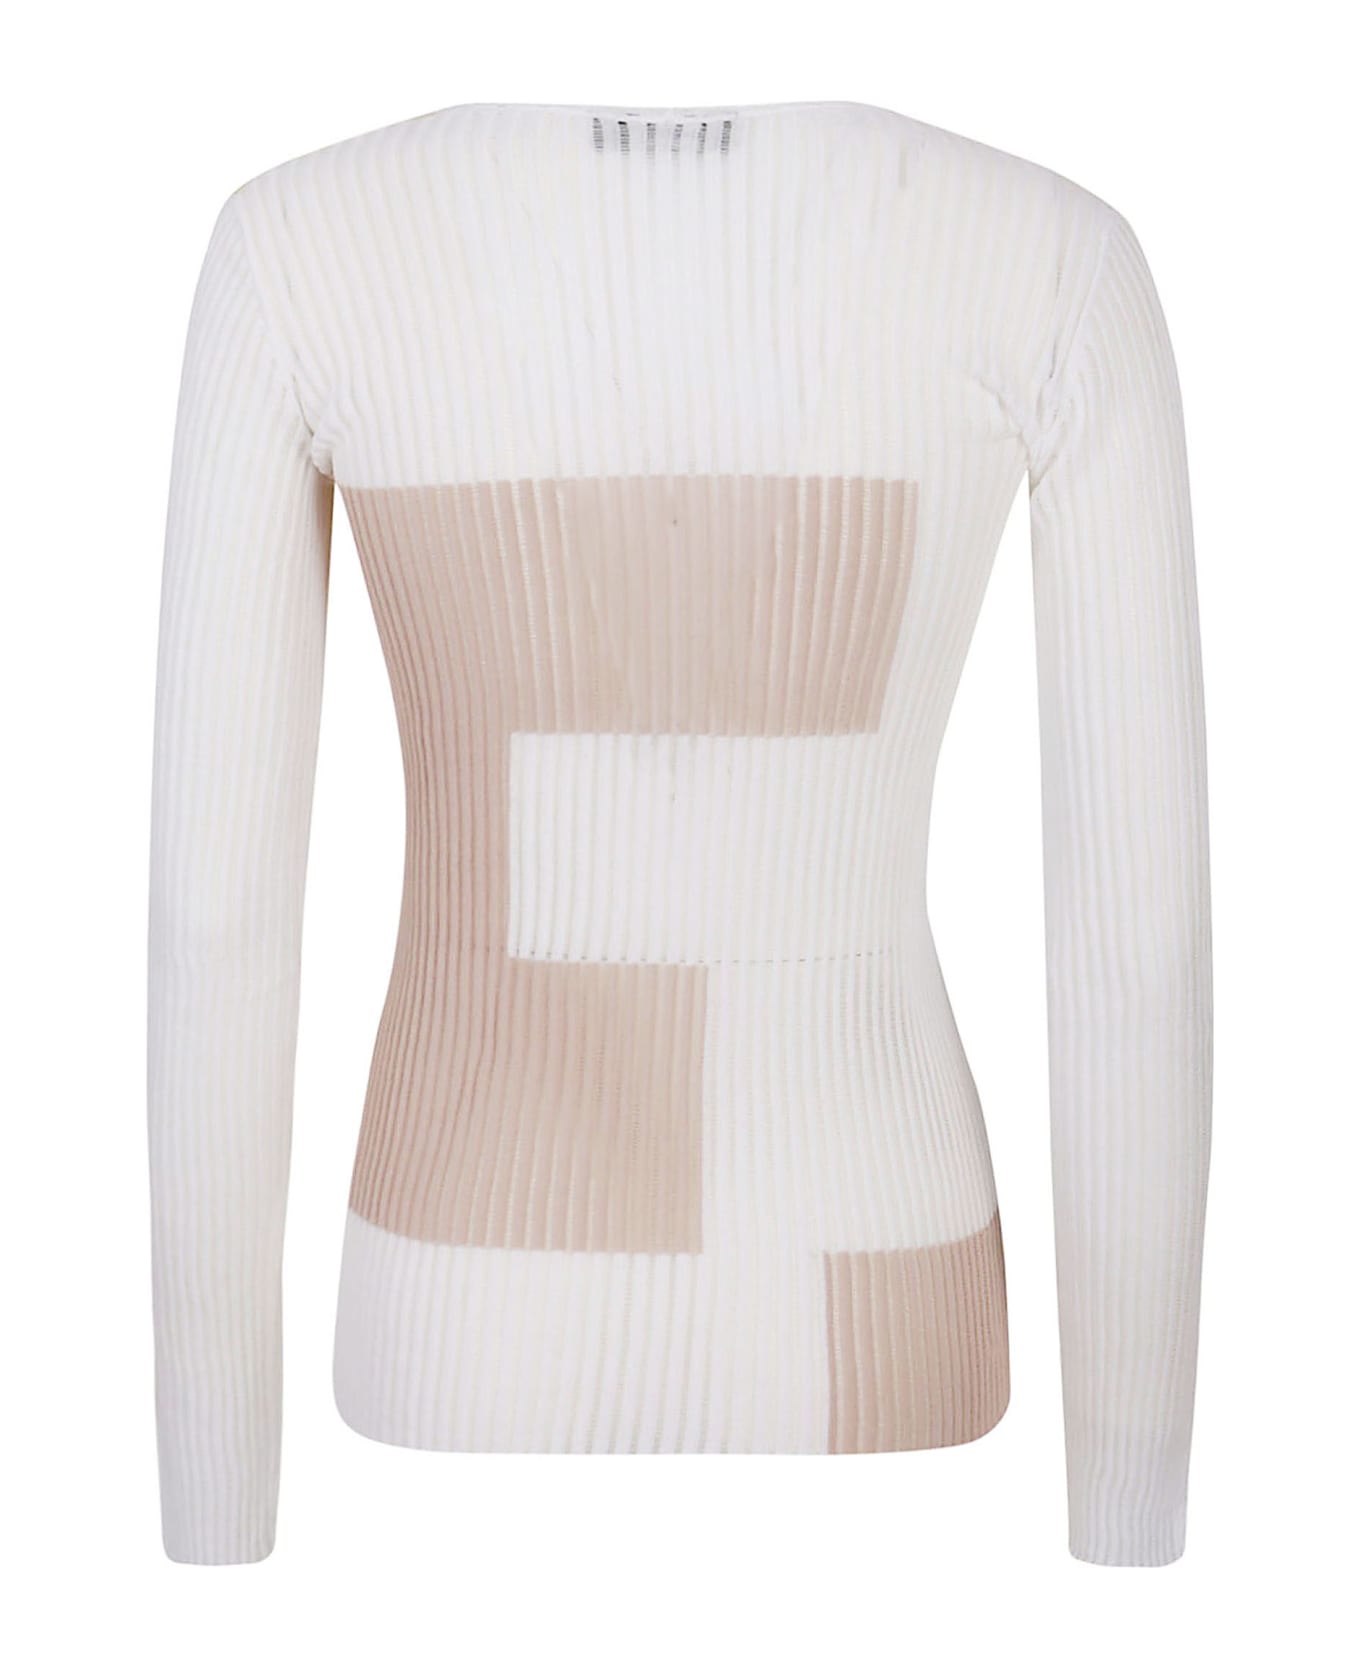 Cividini Sweaters White - White ニットウェア